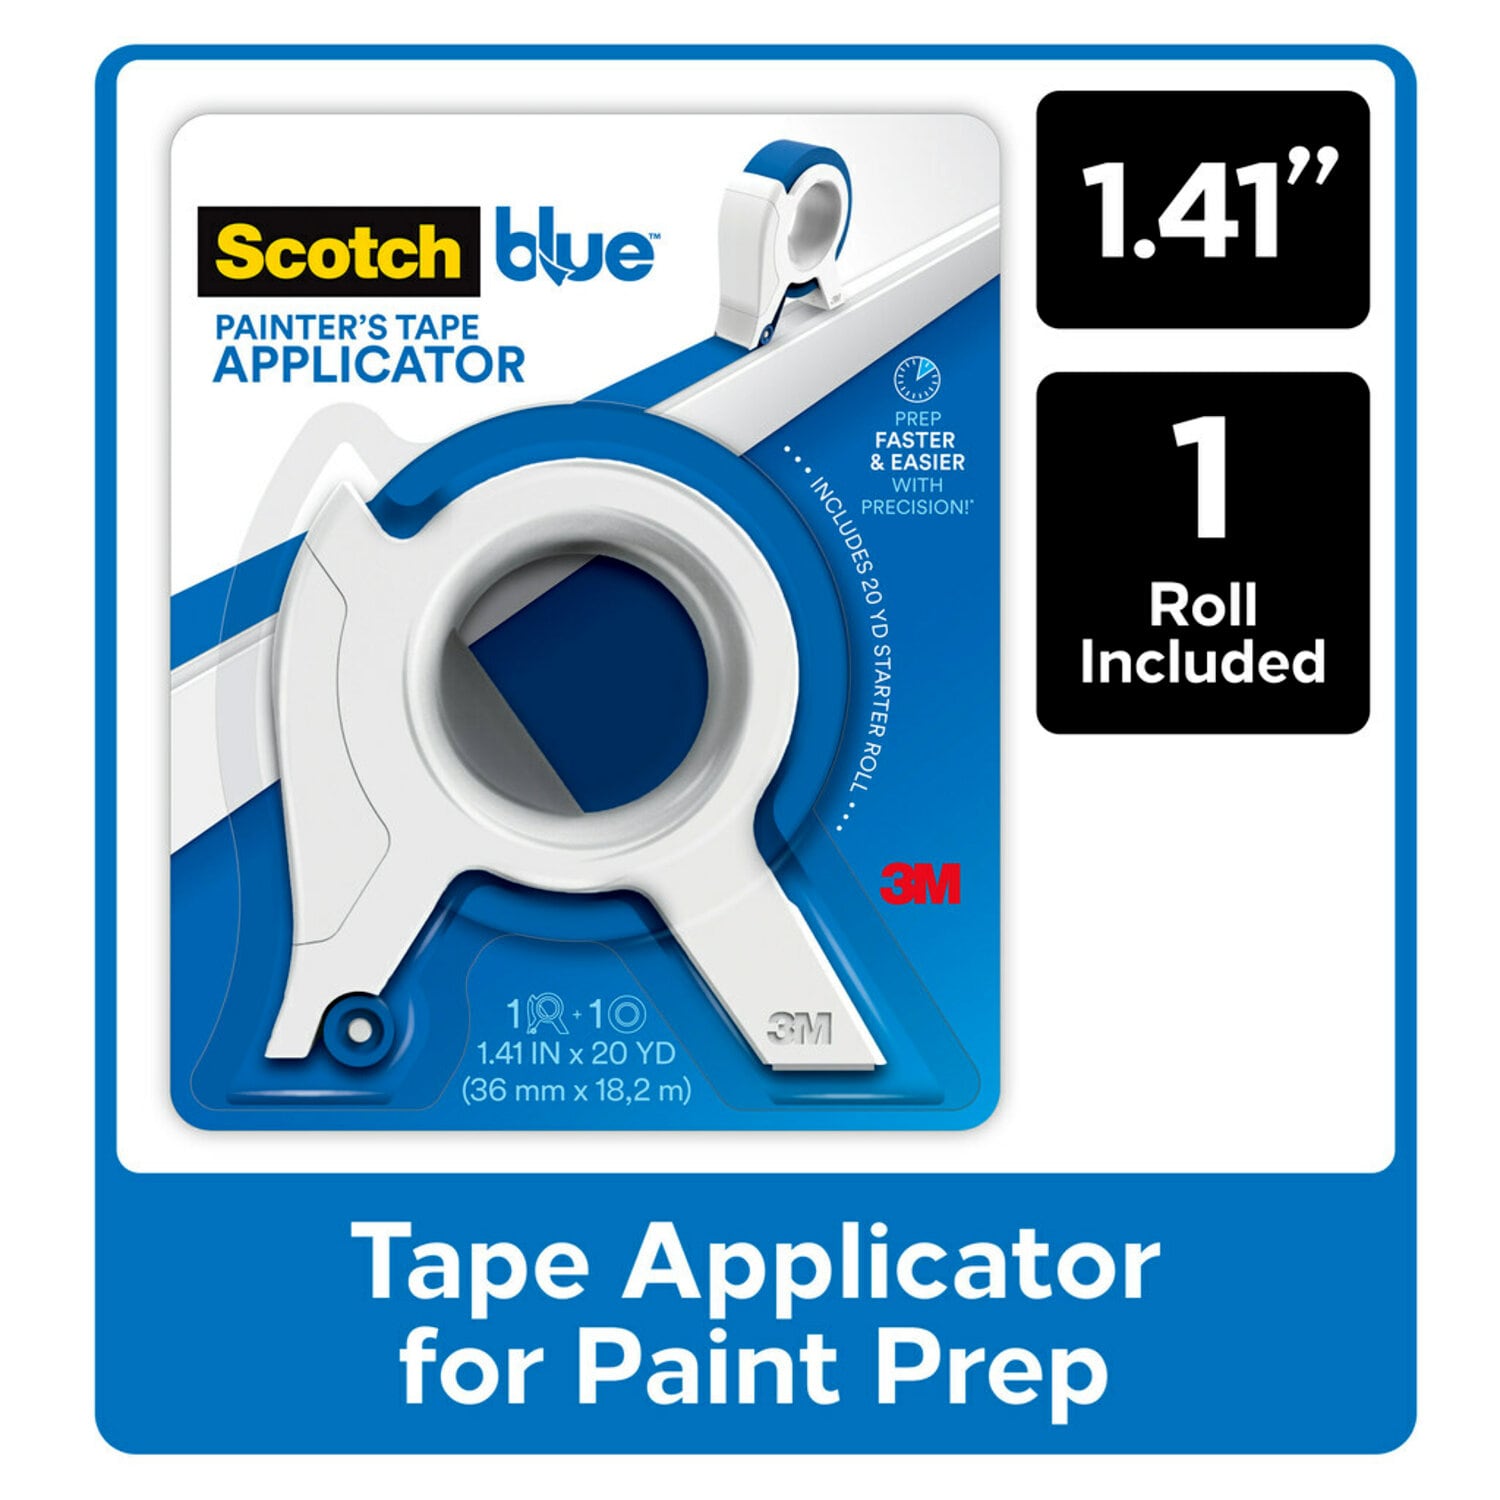 7100190160 - ScotchBlue Painter's Tape Applicator TA3-SB